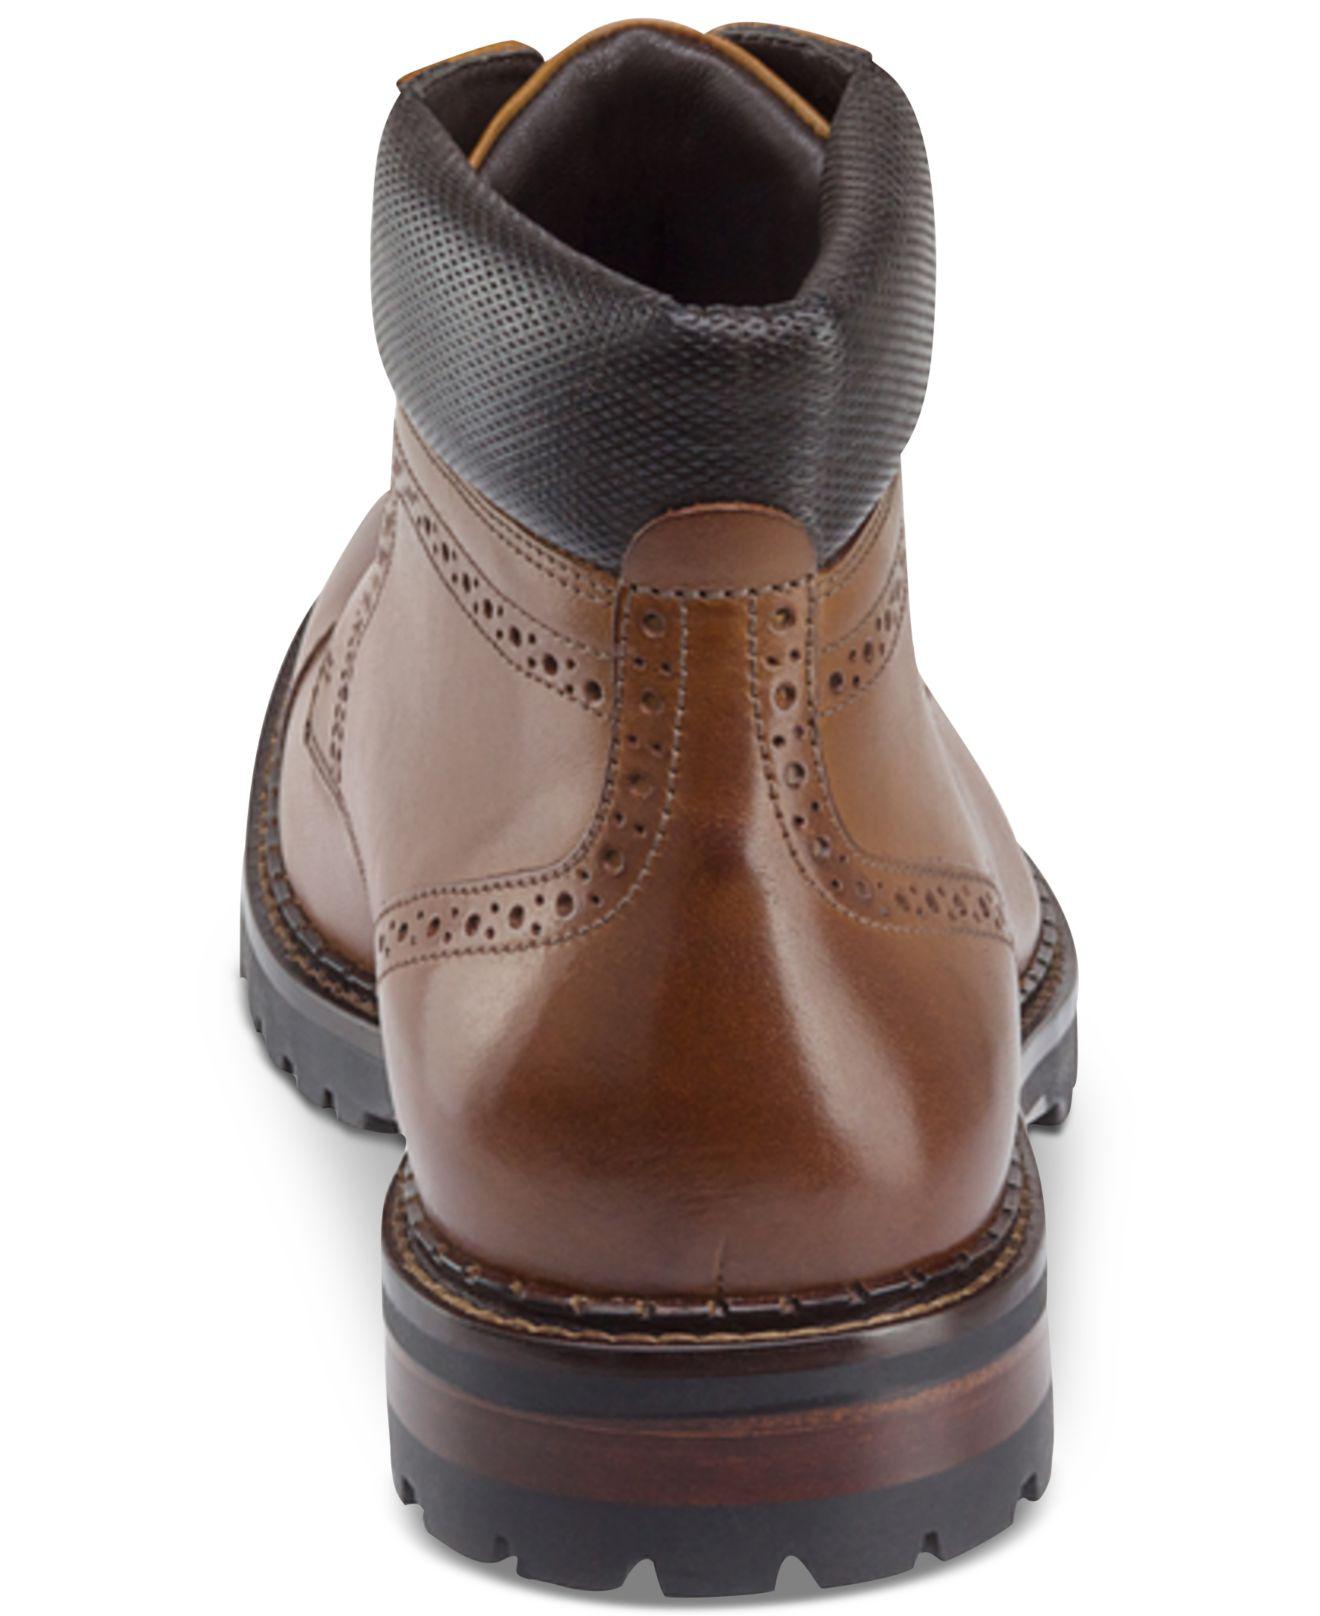 Jennings Cap-toe Boots 